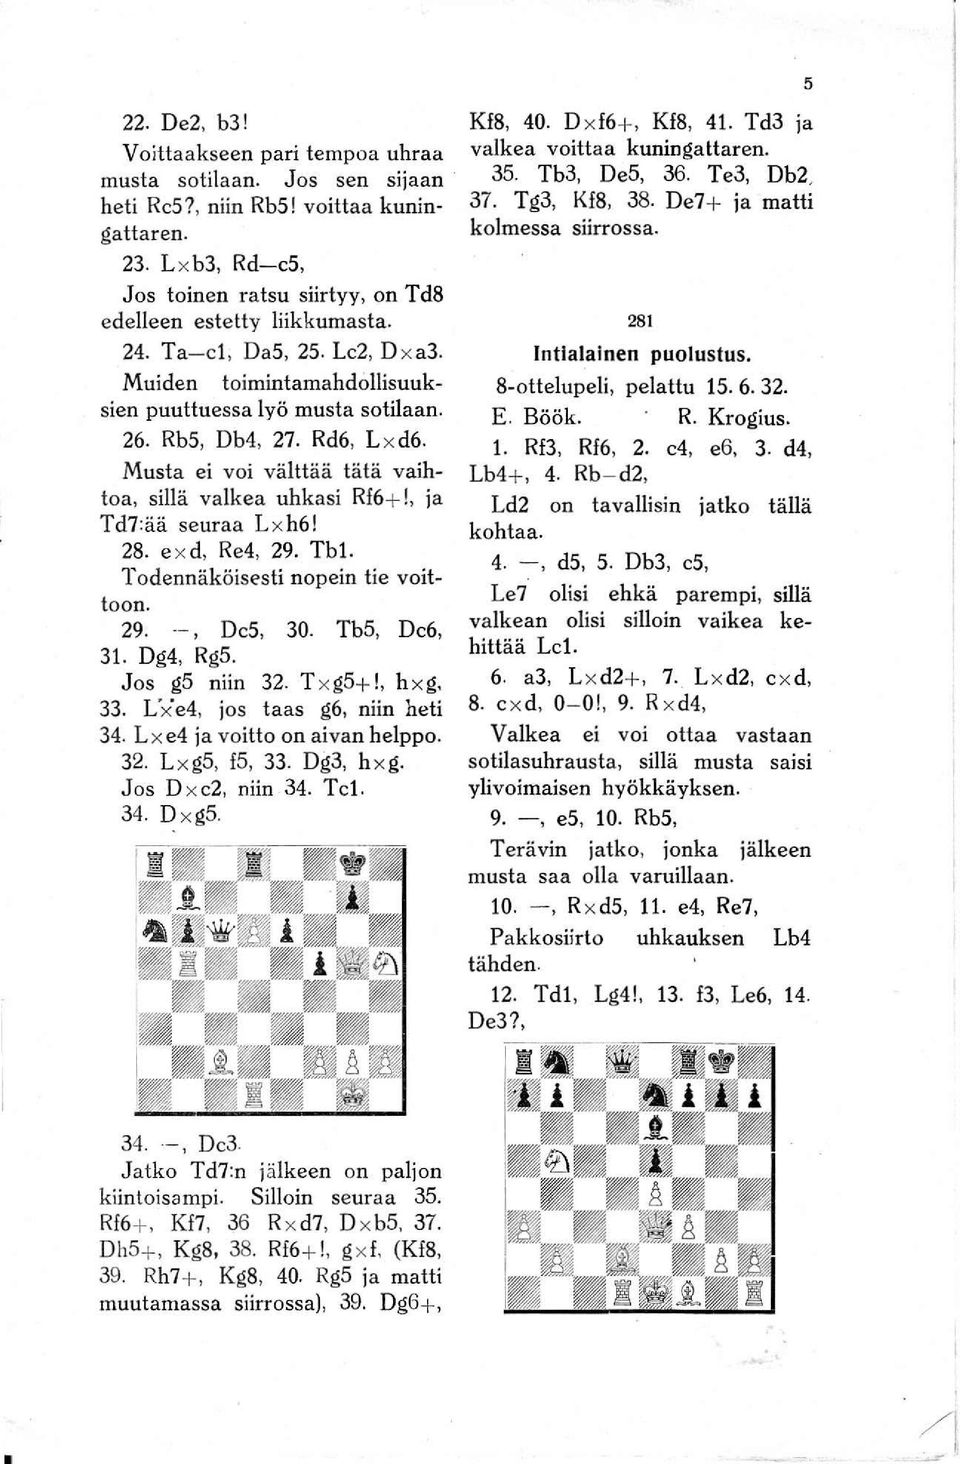 Rd6, L x d6. Musta ei voi välttää tätä vaihtoa, sillä valkea uhkasi Rf6+!, ja Td7:ää seuraa L xh6! 28. e x d, Re4, 29. Tbl. Todennäköisesti nopein tie voittoon. 29. --, De5, 30. Tb5, De6, 31.